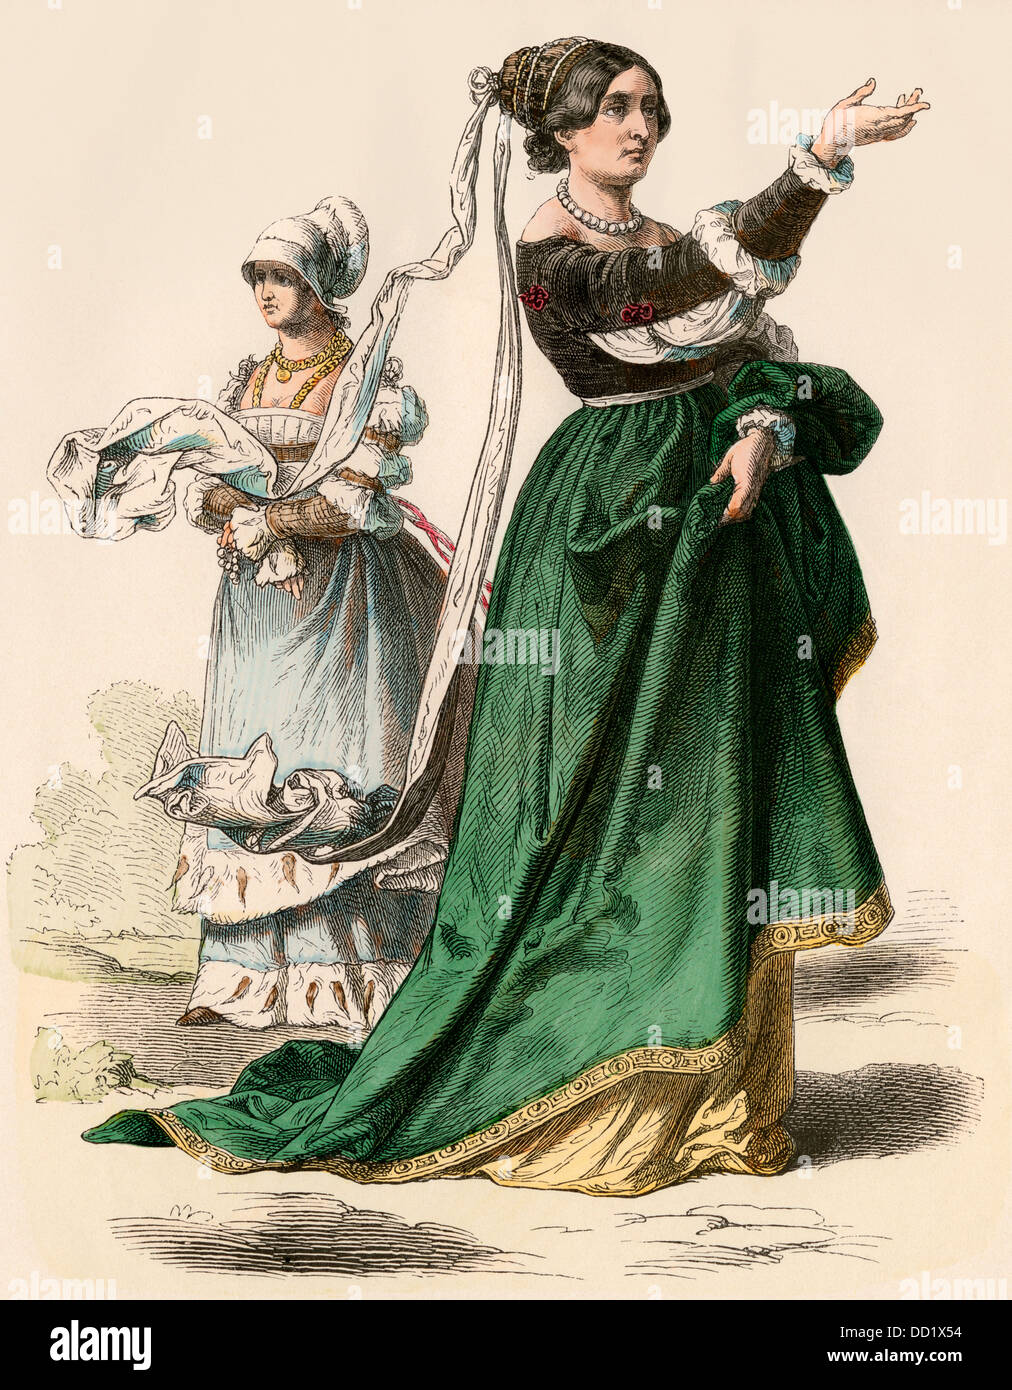 Femme allemande patricienne, années 1500. Impression couleur à la main Banque D'Images